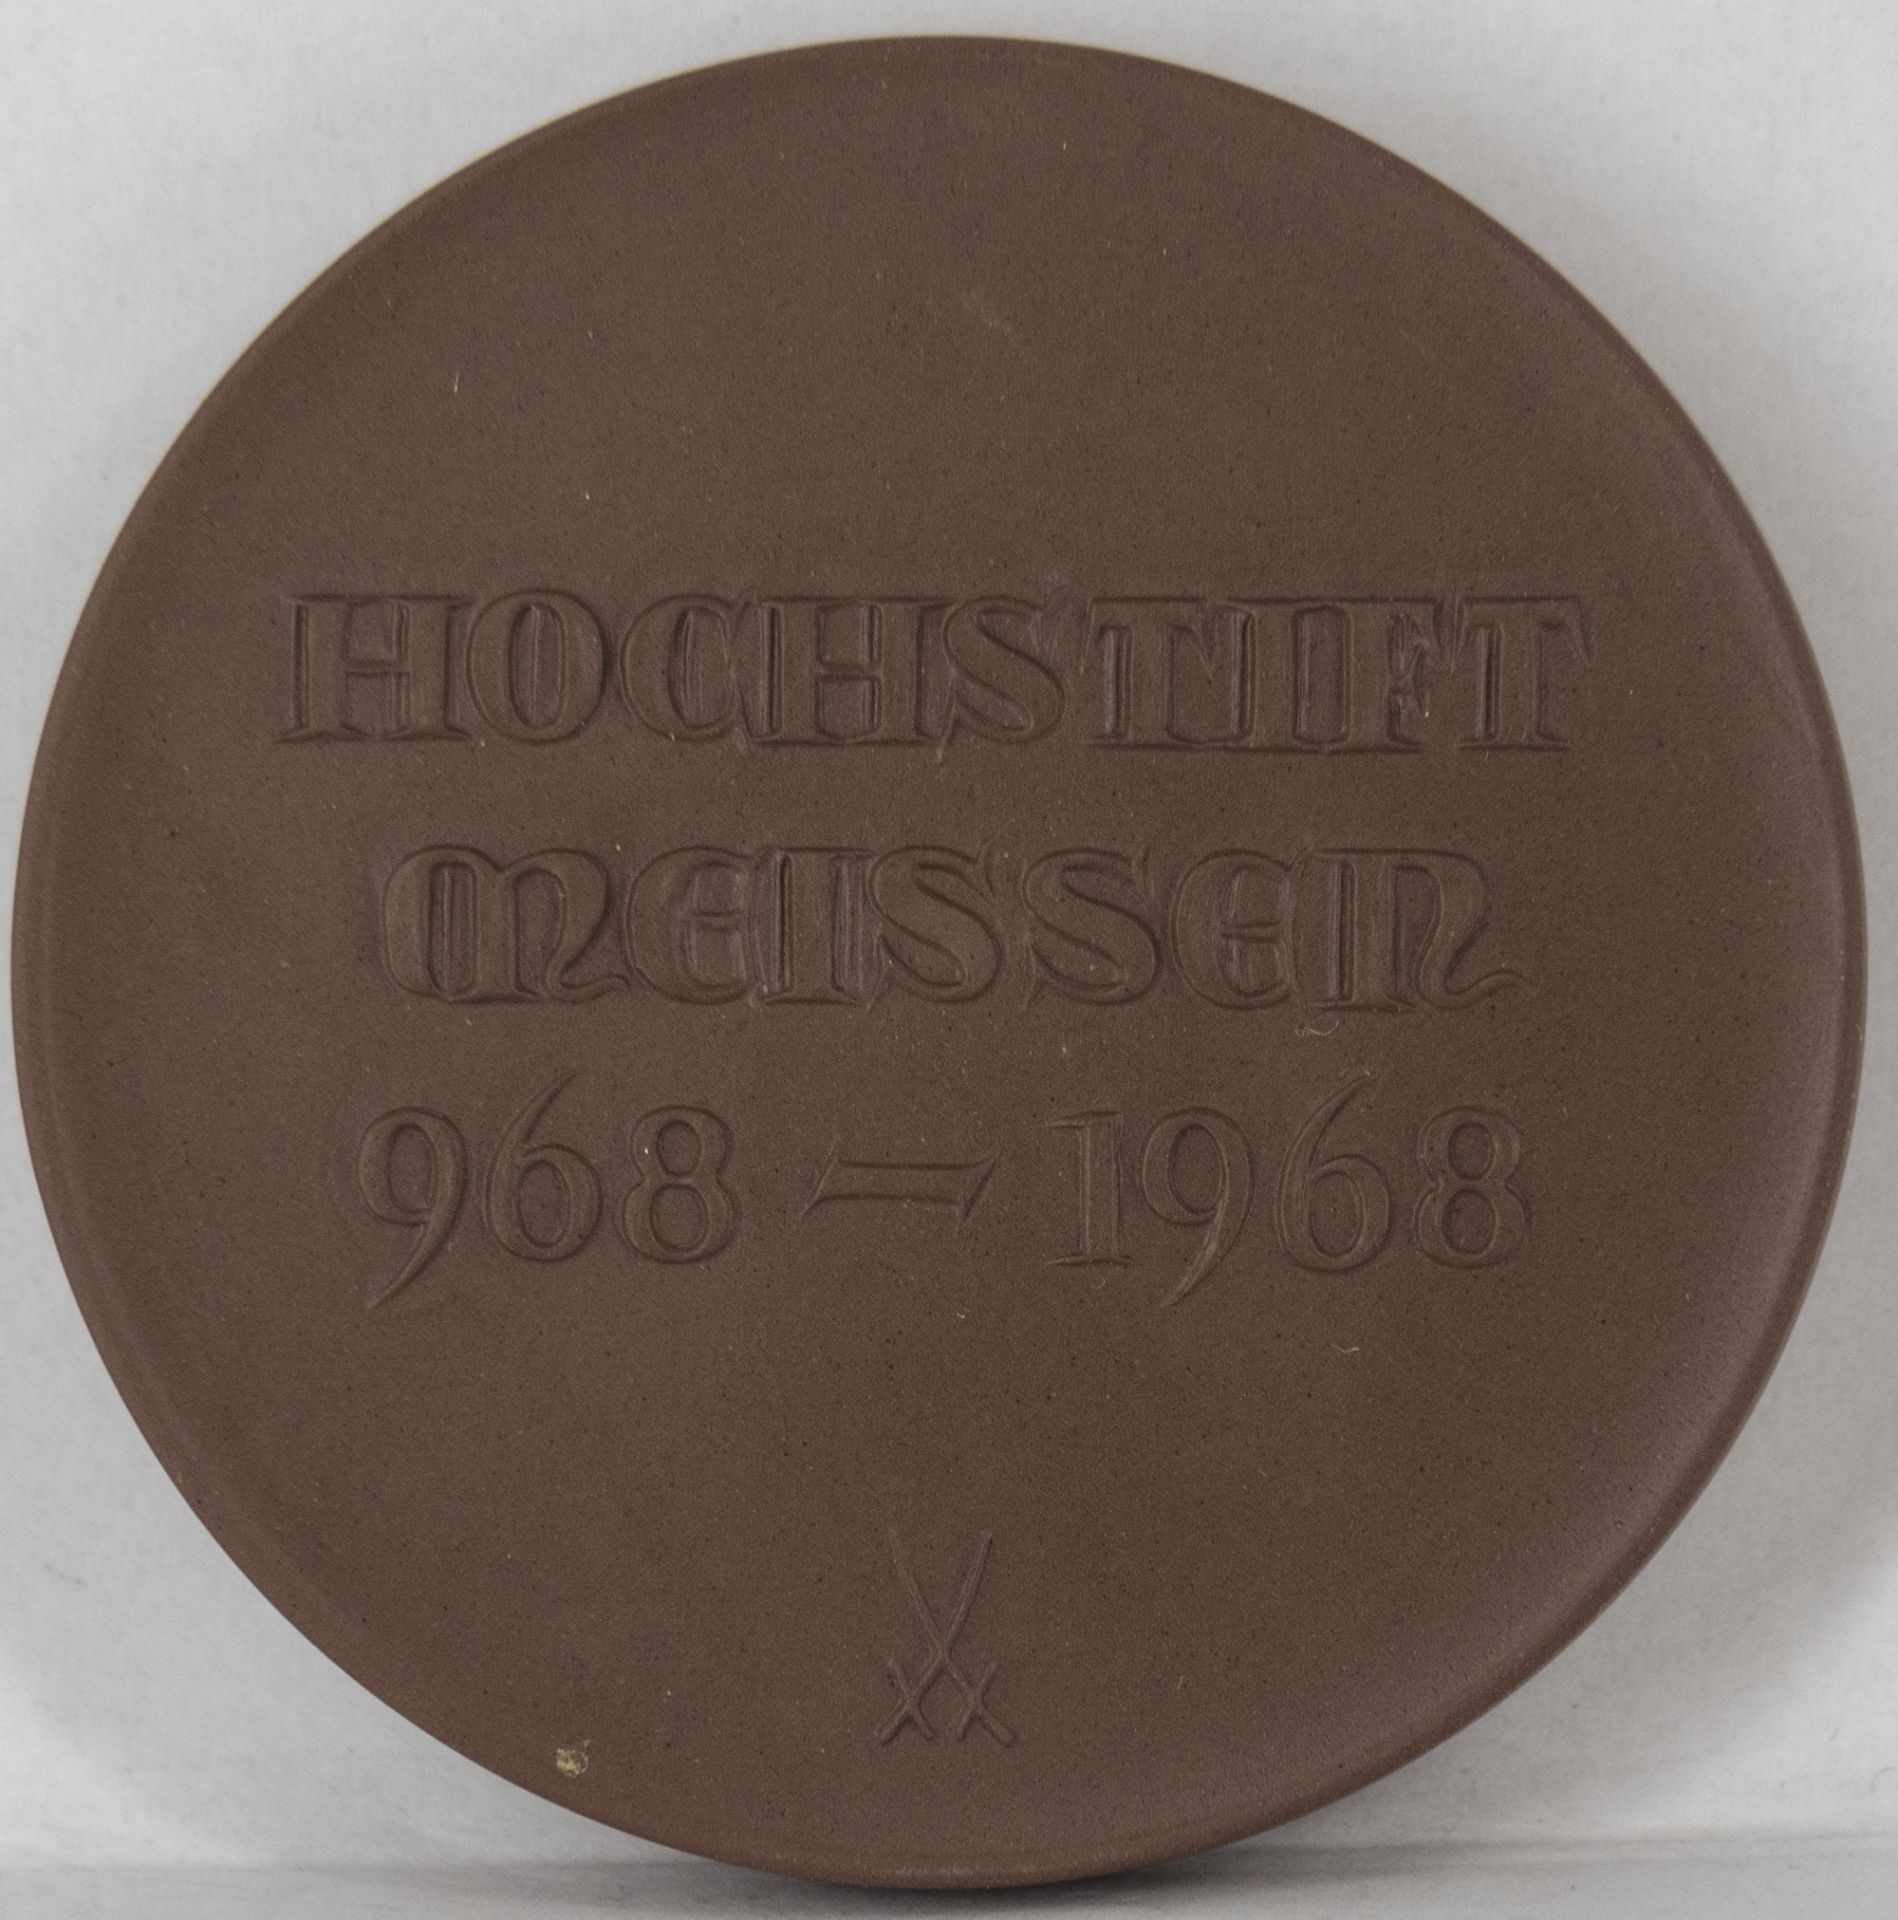 Porzellan - Medaille "Hochstift Meissen 968 - 1968", Meißen, Durchmesser: ca. 65 mm. Erhaltung: VZ. - Image 2 of 2